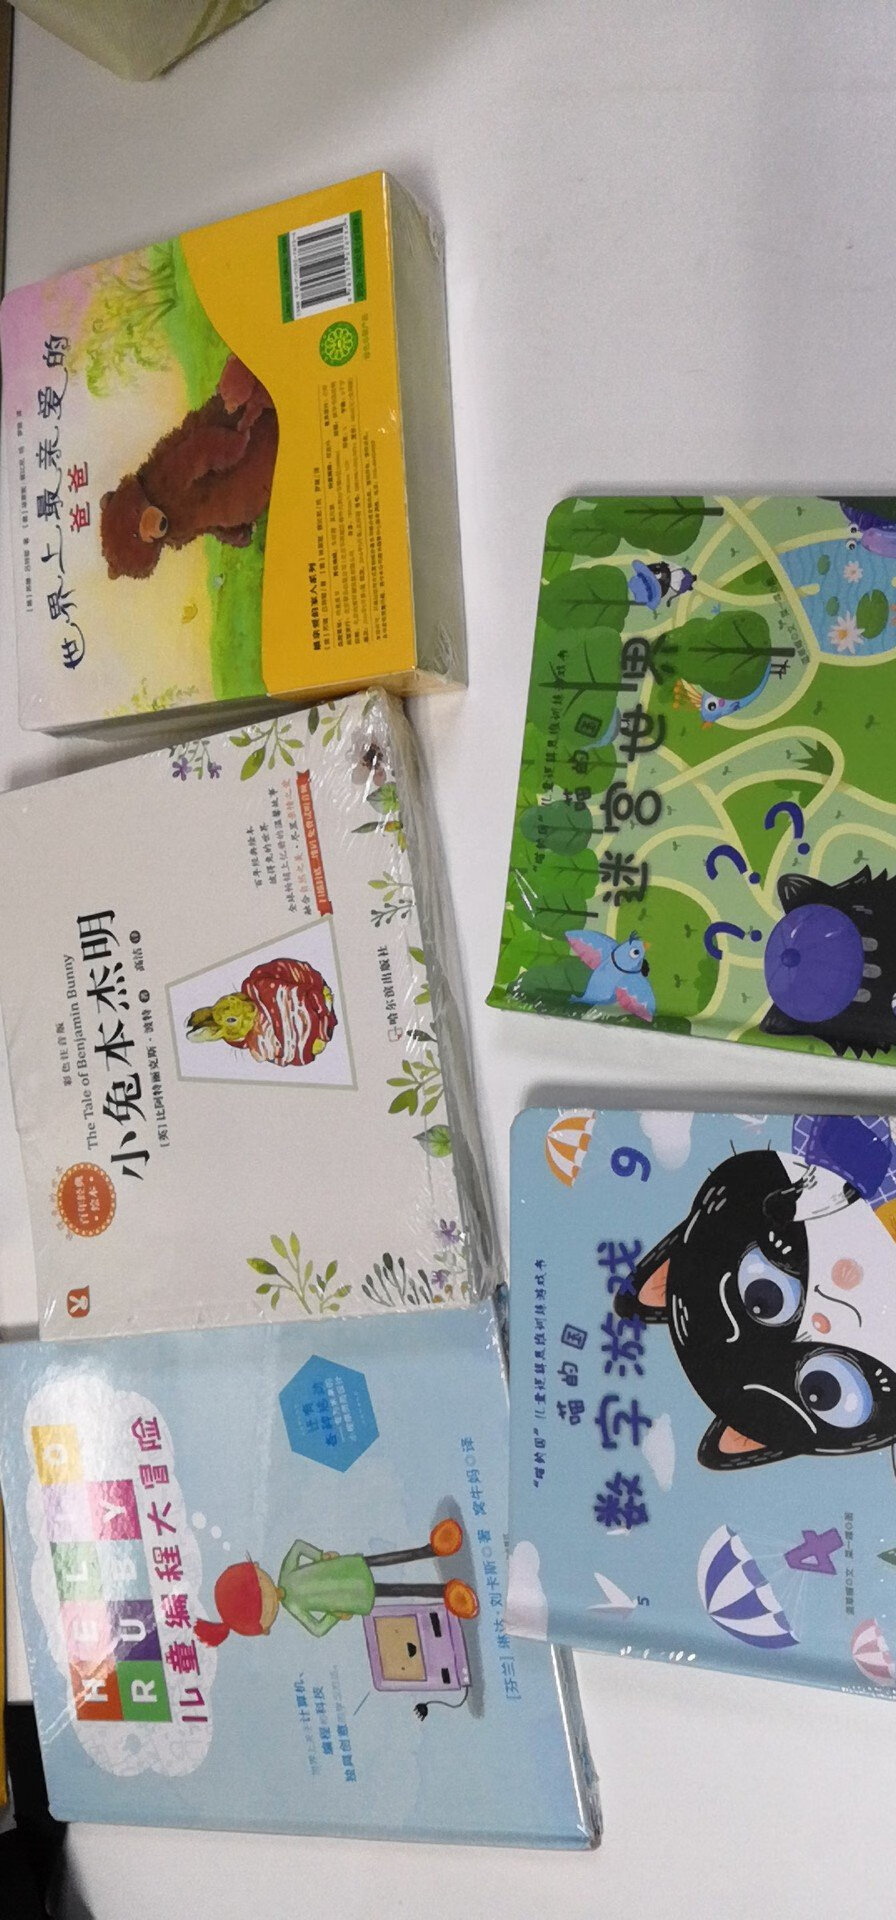 99旋舞里买的，参加活动的这套书有两本，一本绿的，一本蓝的两本都买了，是纸板书，让宝宝玩儿的锻炼逻辑思维的，走迷宫之类的。